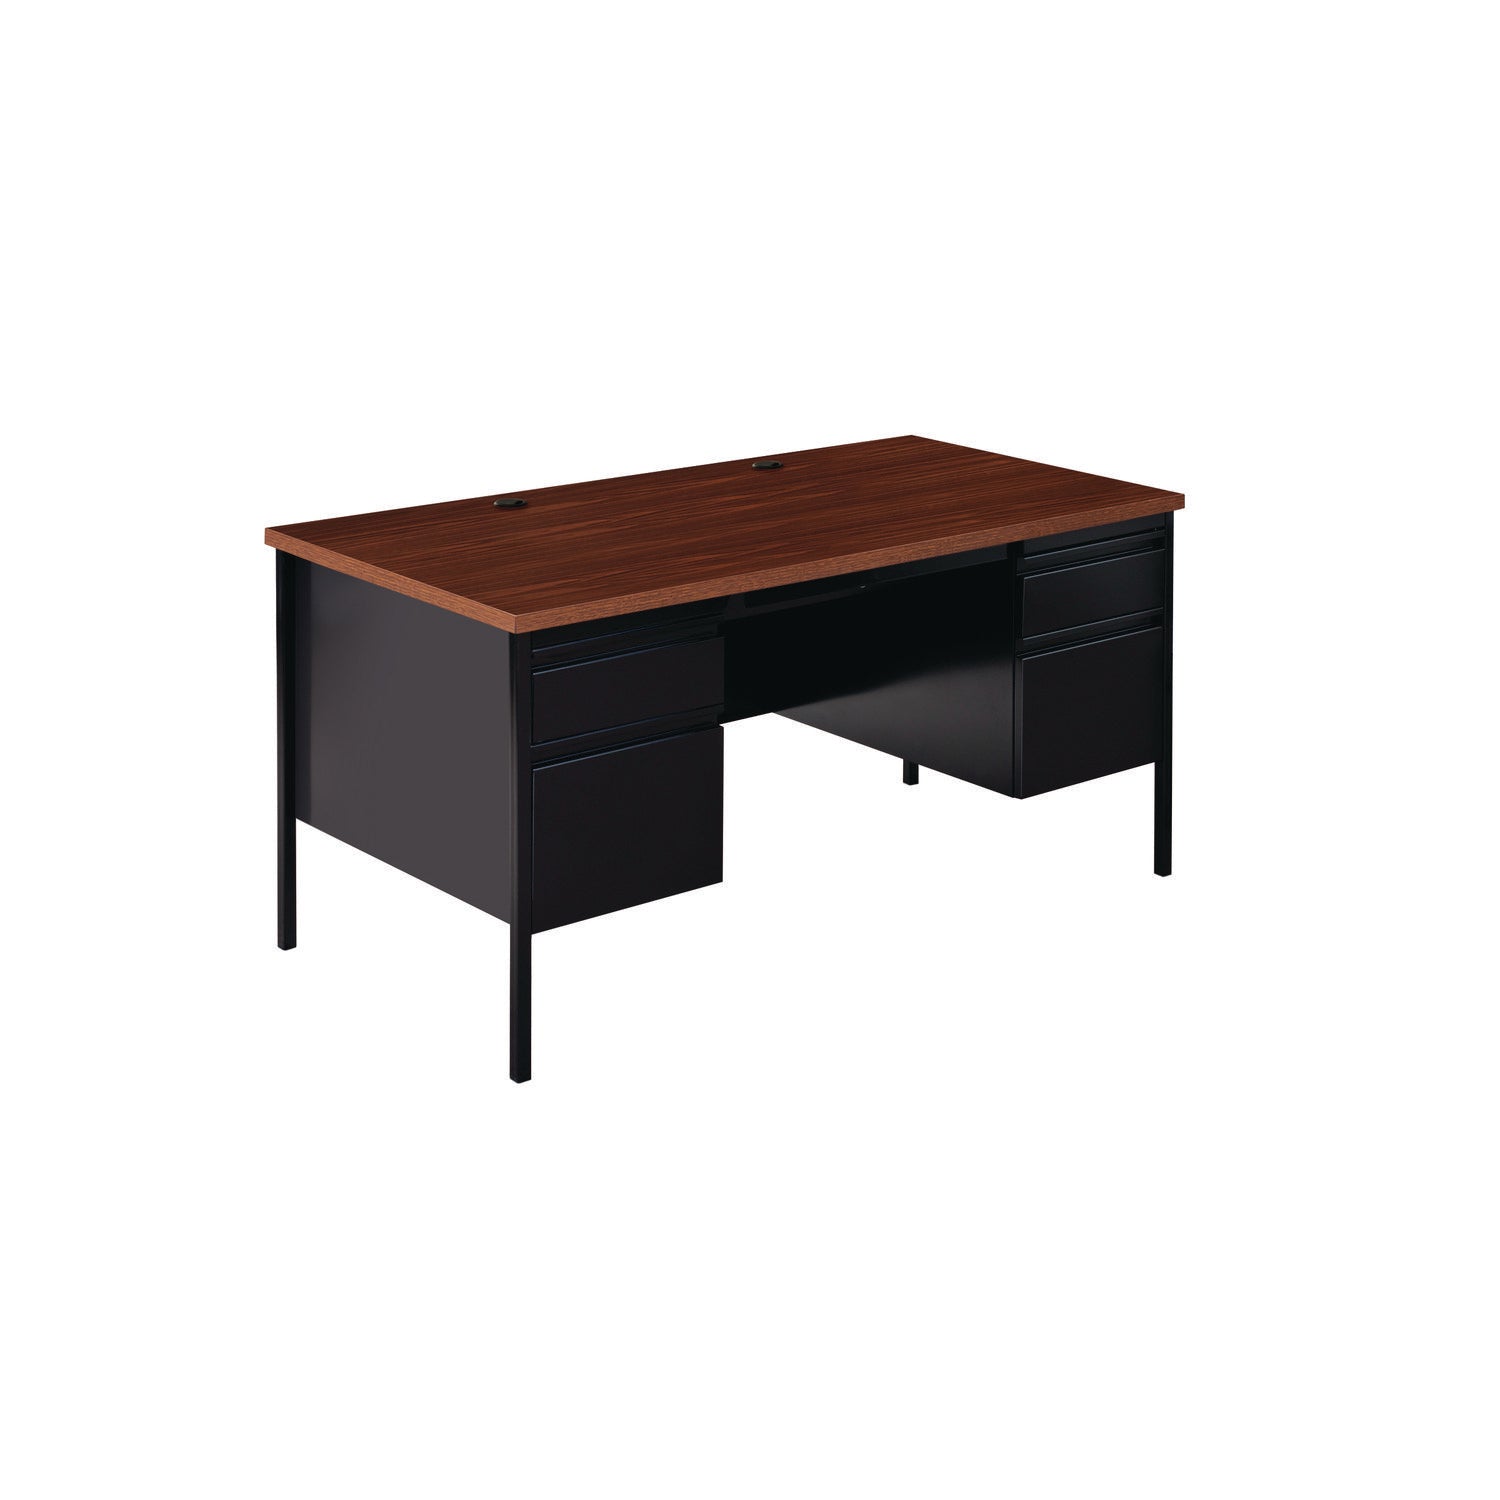 double-pedestal-steel-desk-60-x-30-x-295-mocha-black-black-legs_alehsd6030bm - 3